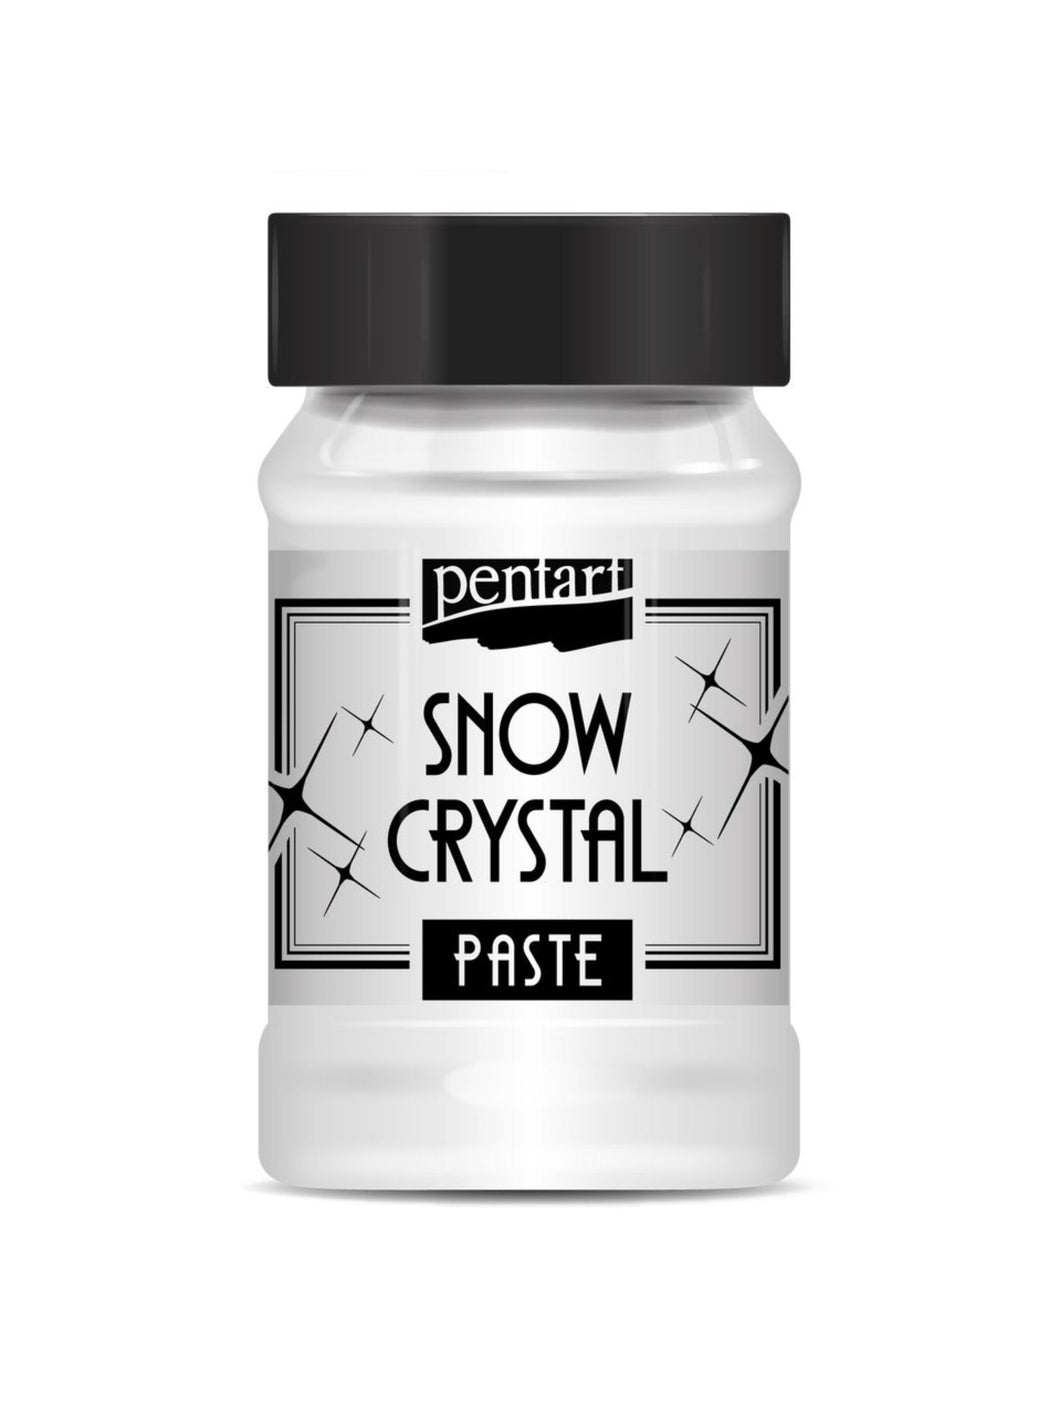 Pentart Snow Crystal paste